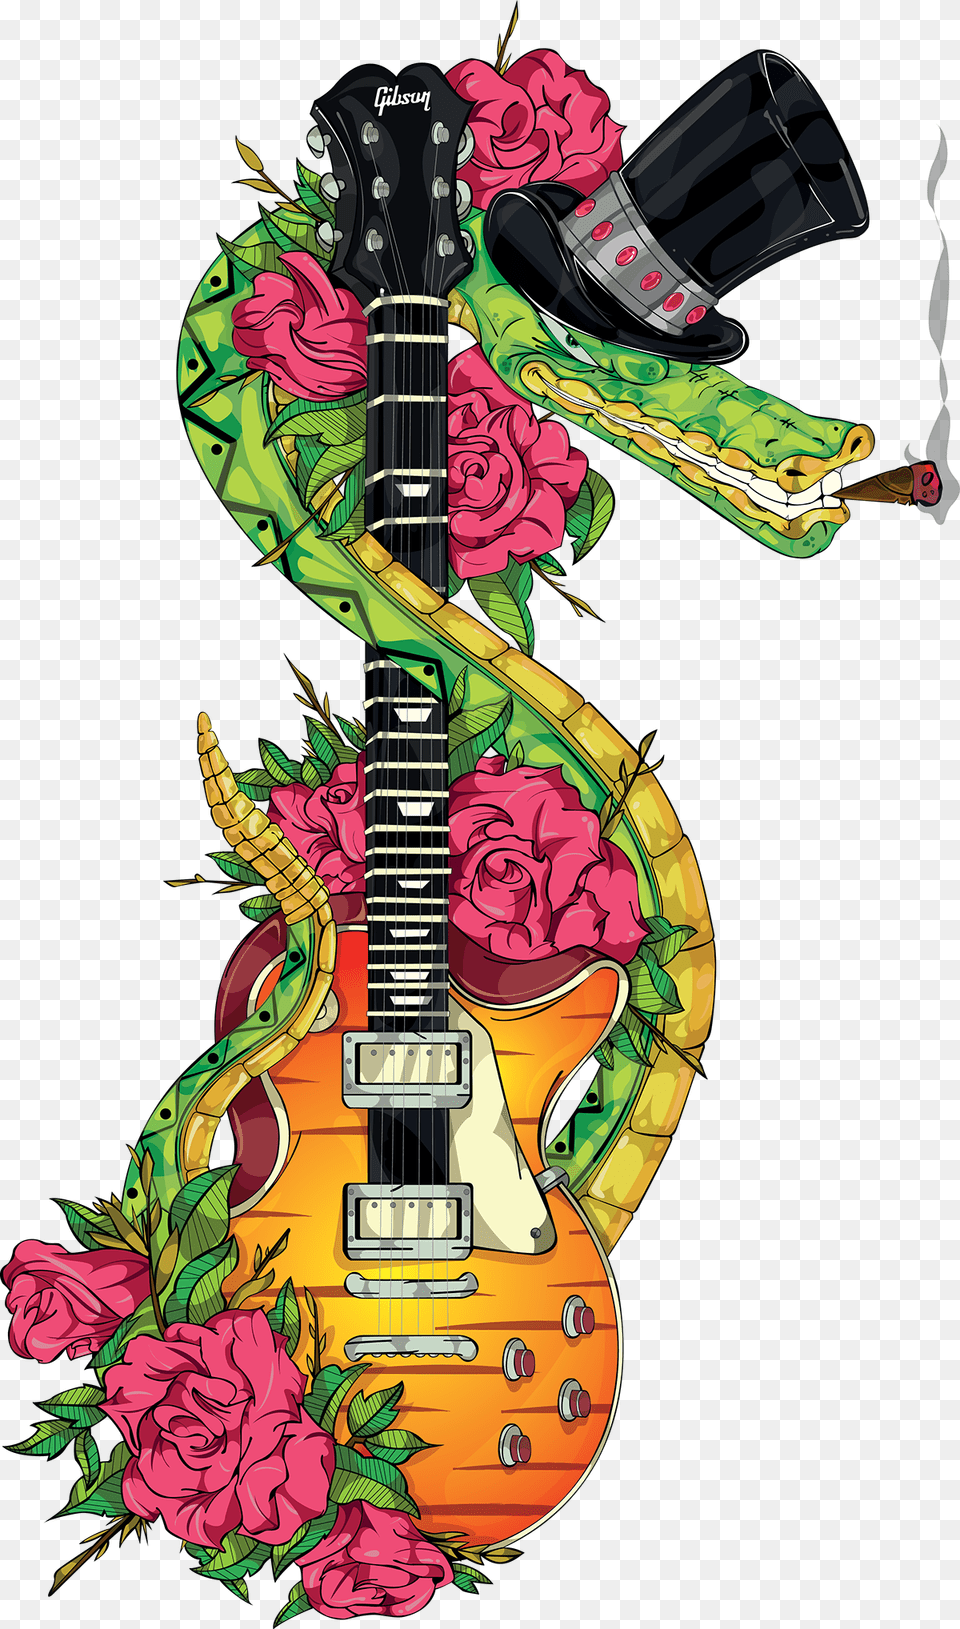 Slash Snakepit Tattoo Slash Snakepit Art Work, Guitar, Musical Instrument, Floral Design, Graphics Free Transparent Png